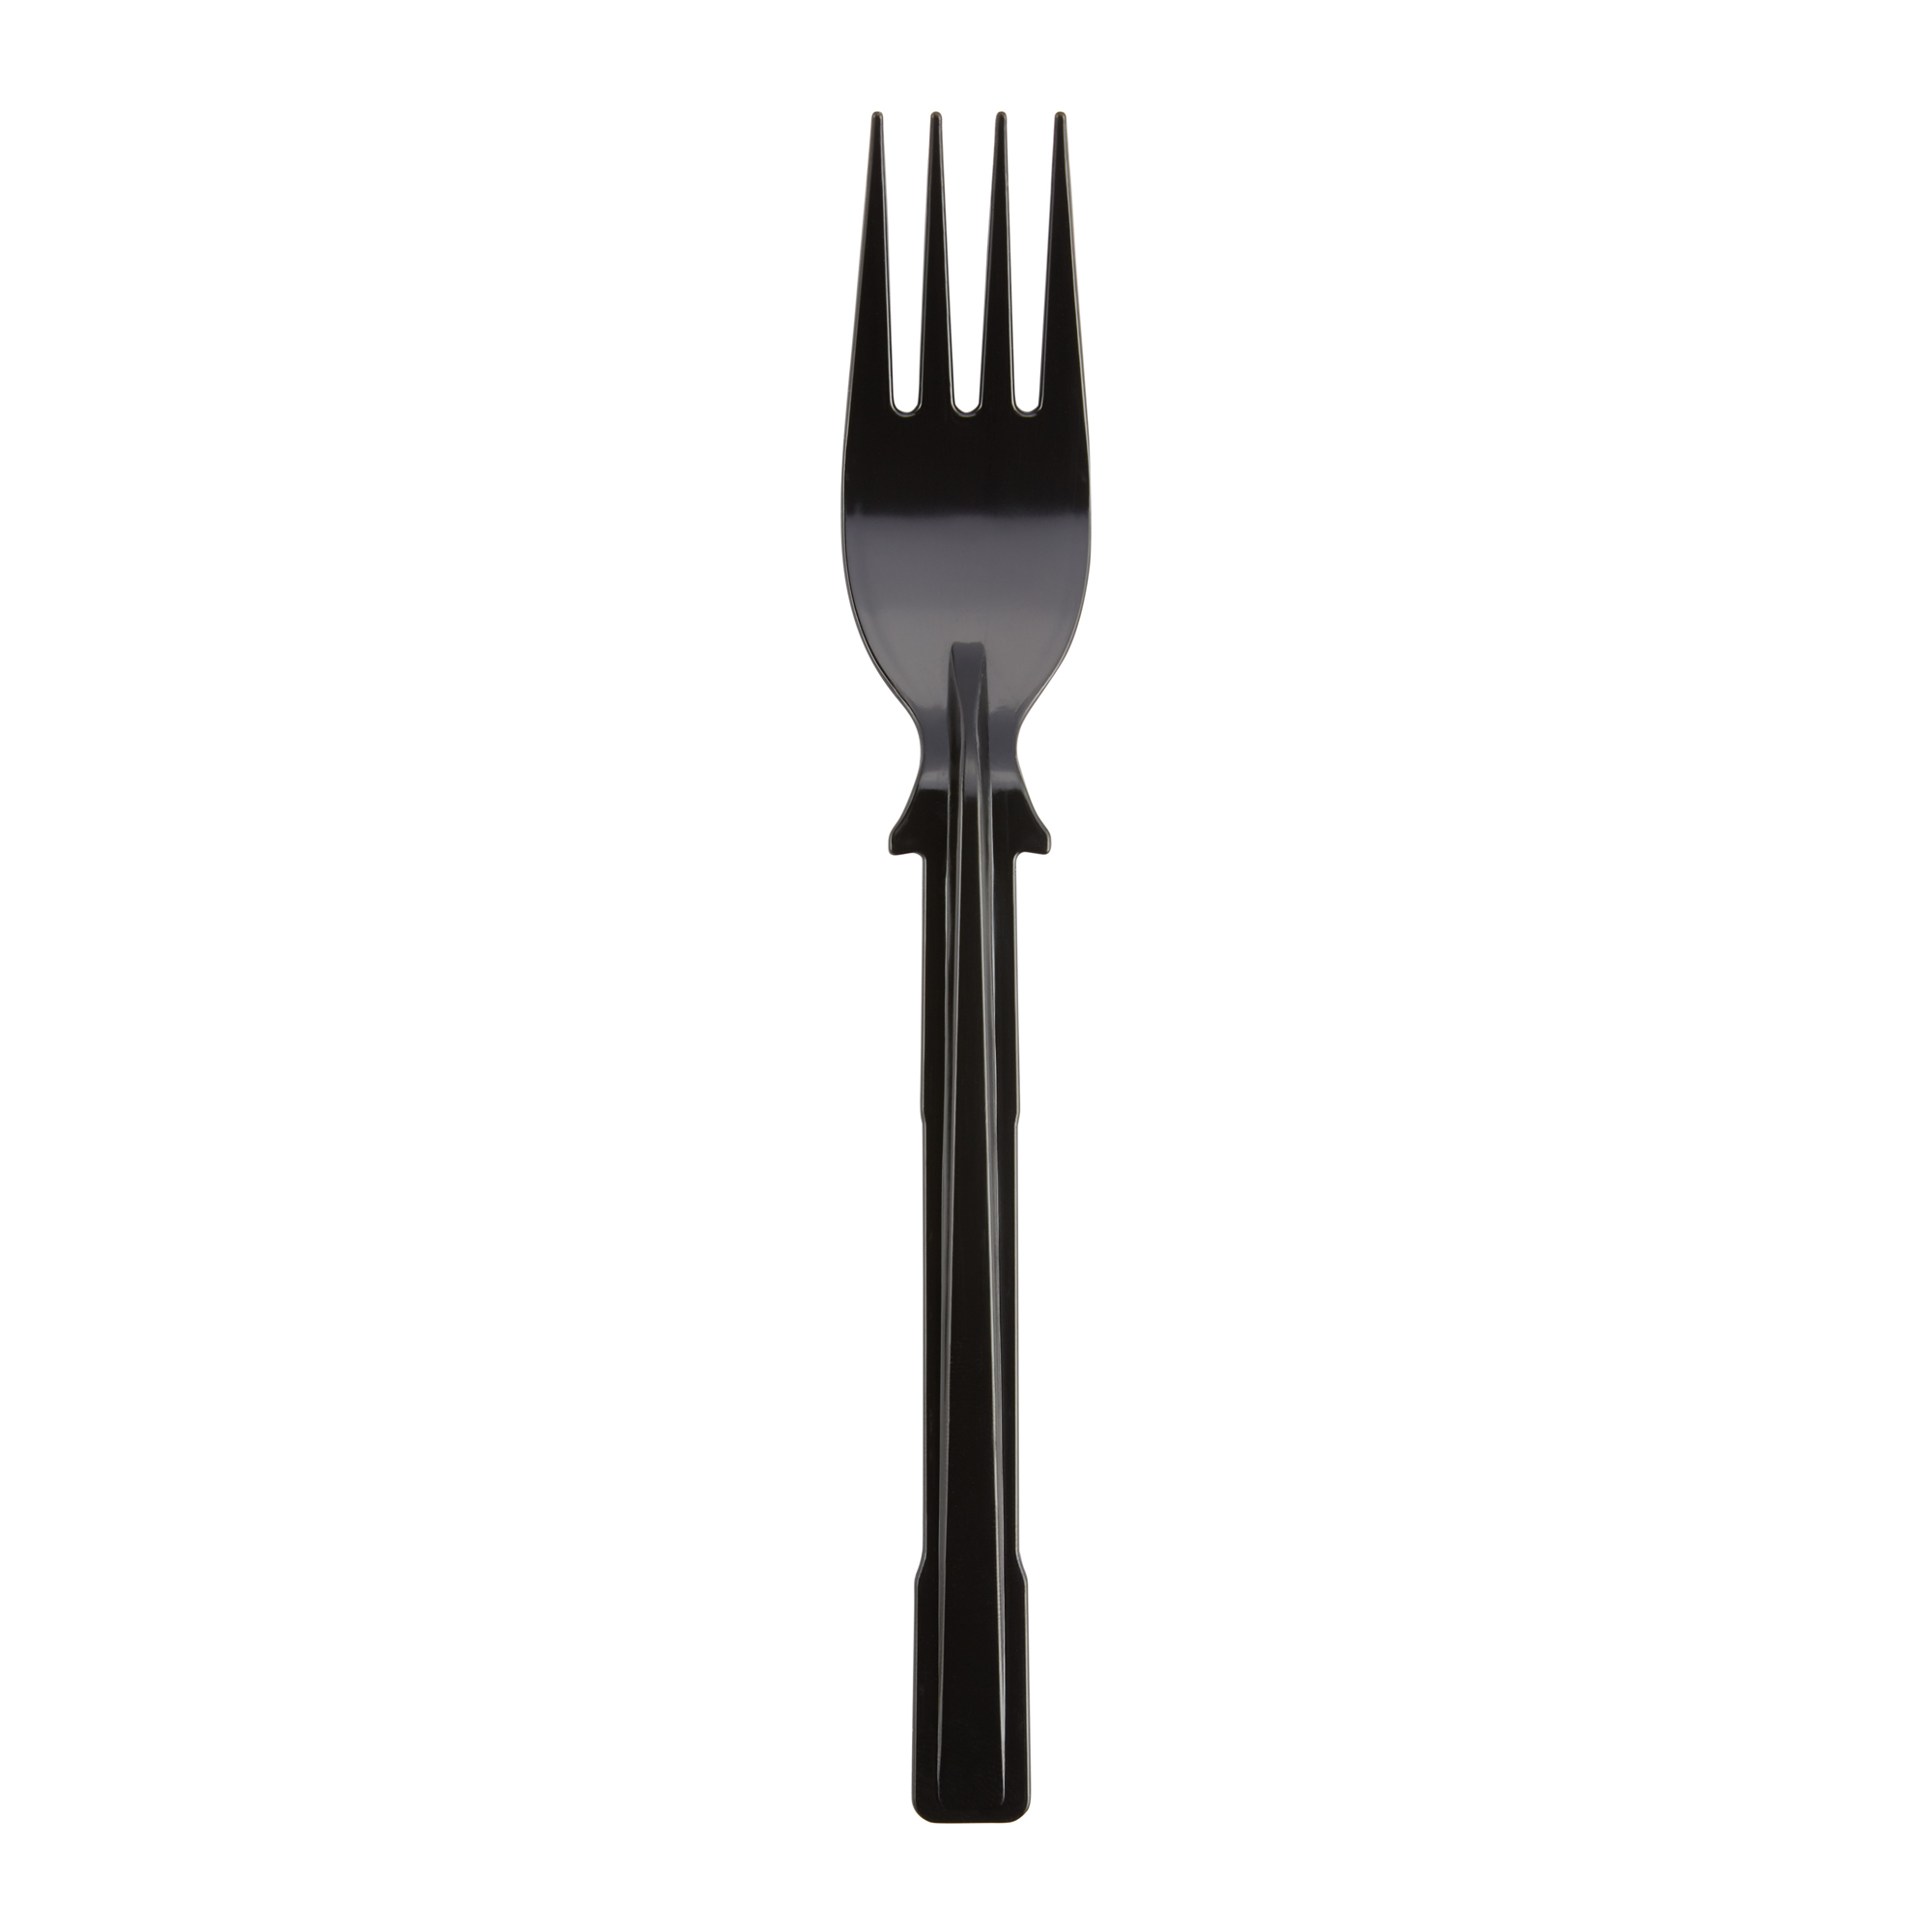 Singular black Dixie fork made from Polystyrene